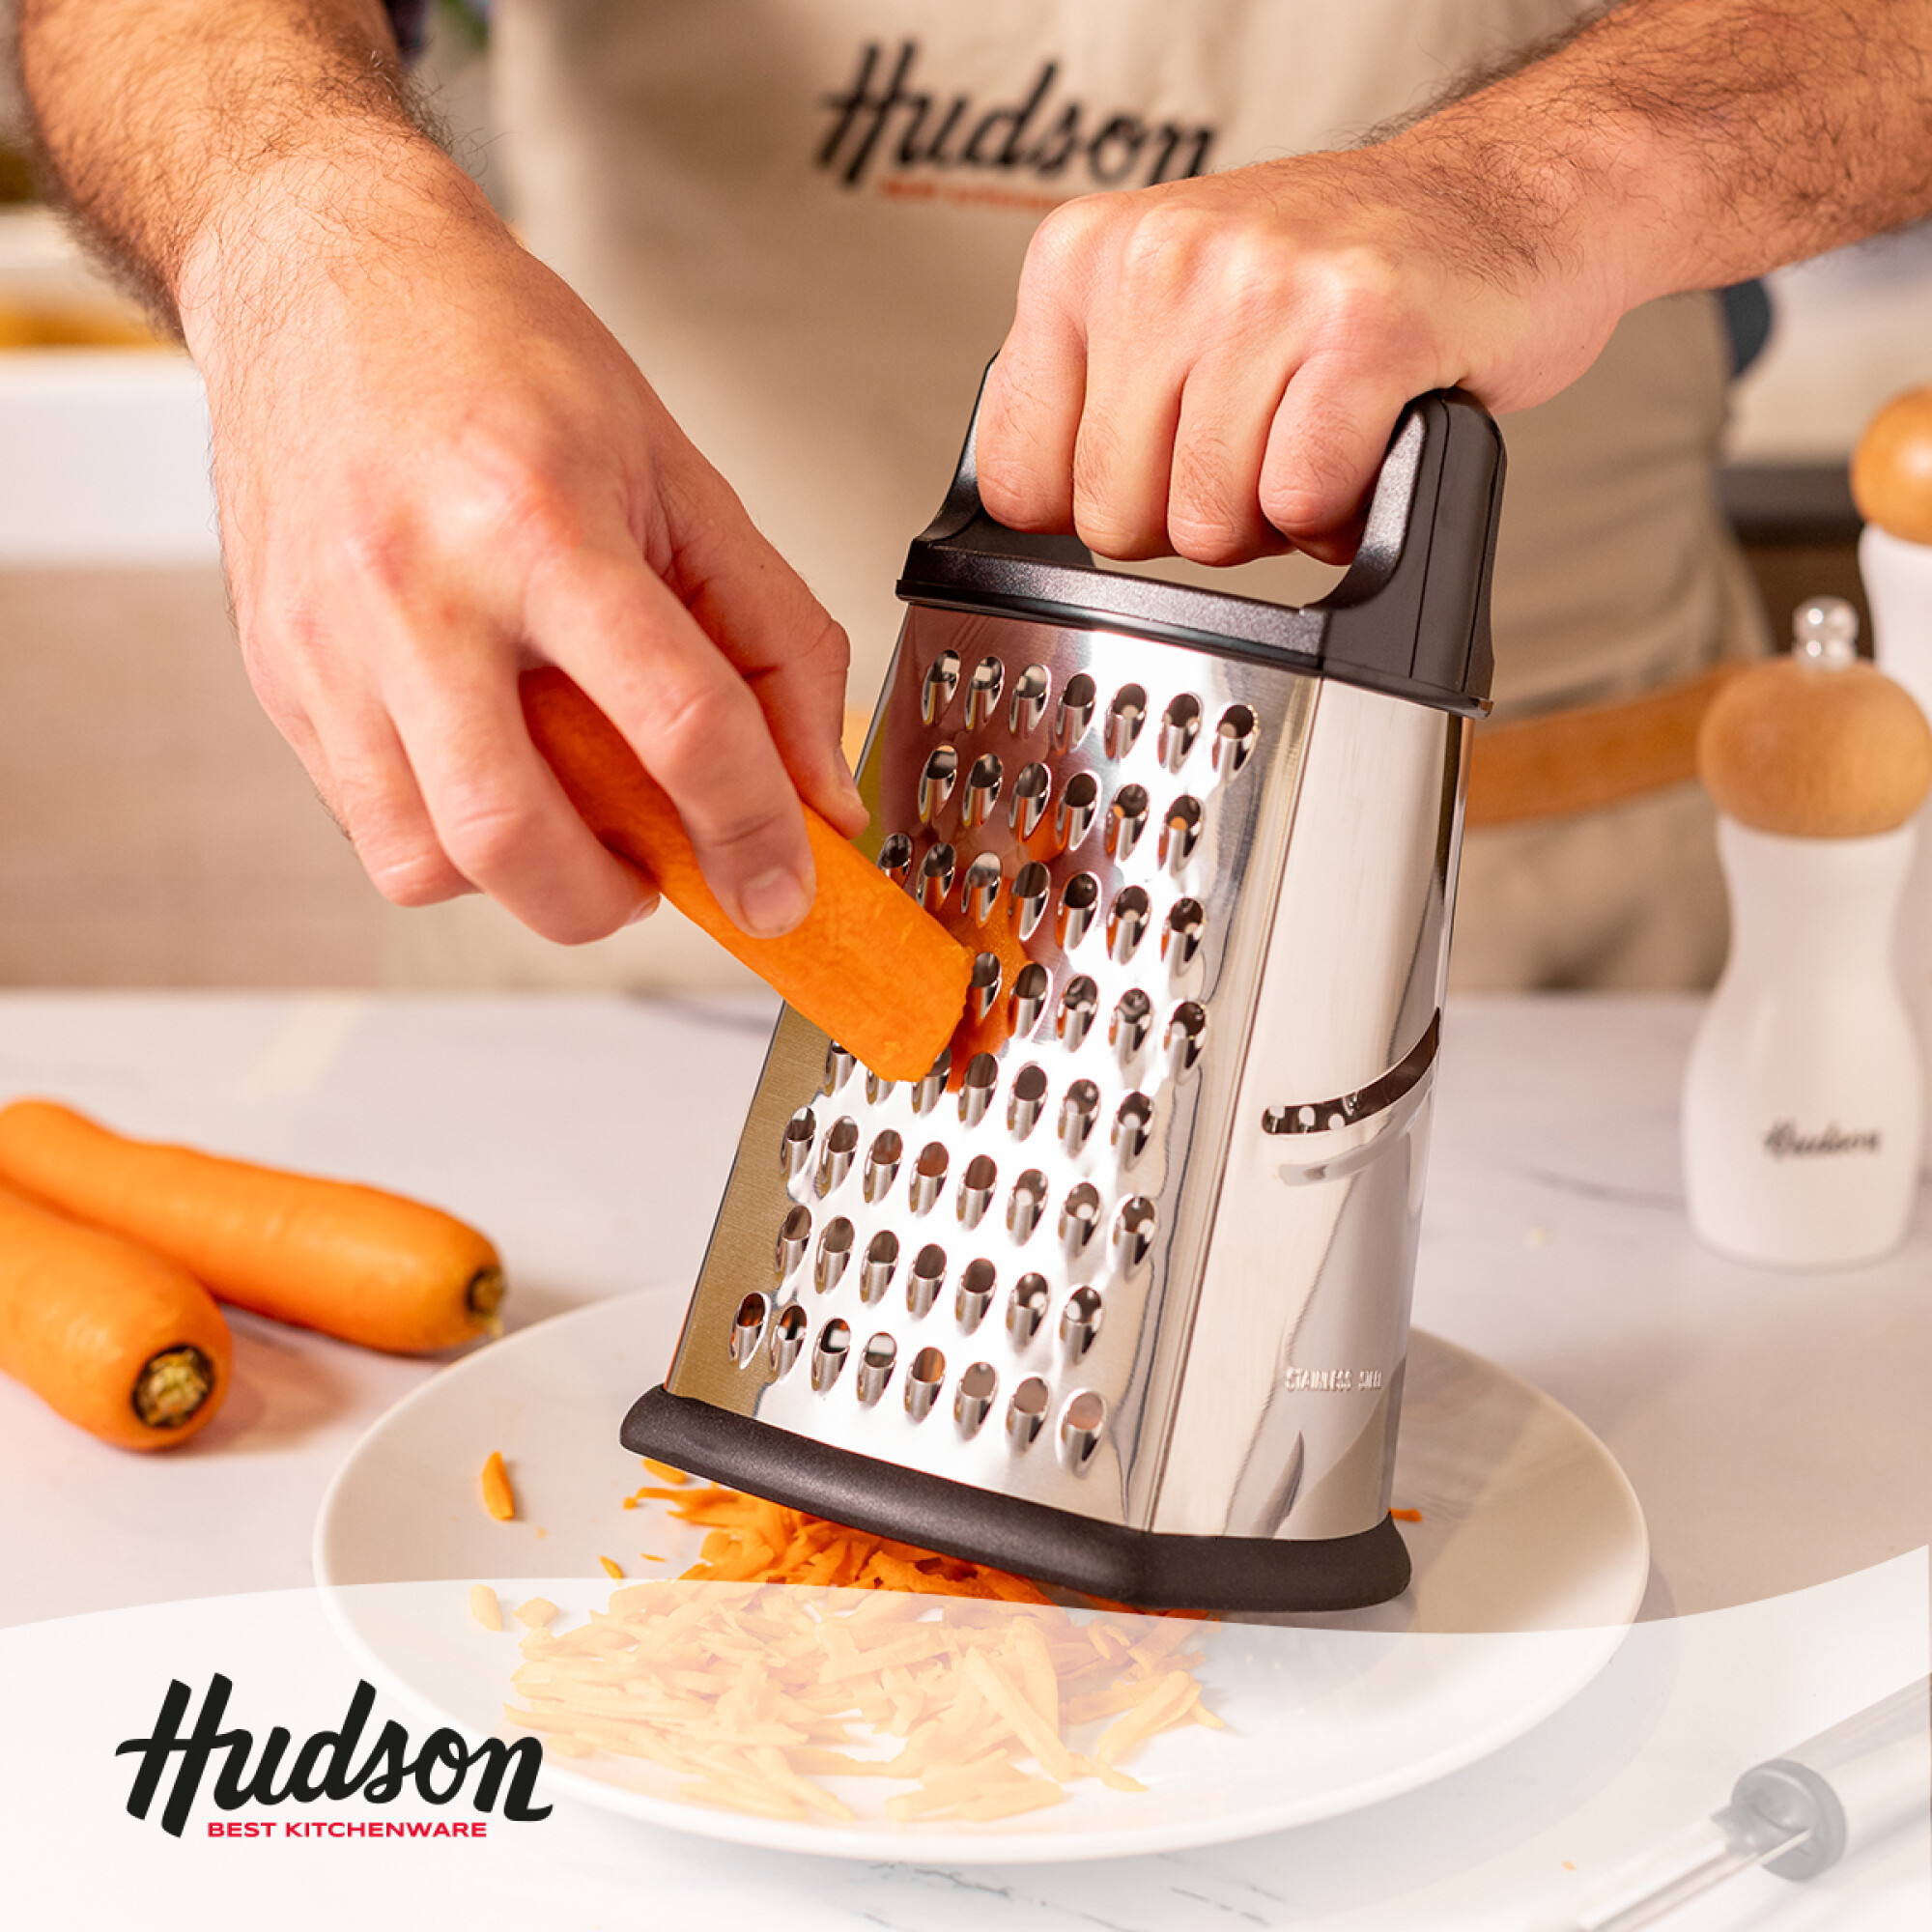 Rallador Manual Acero Inoxidable 4 Caras 22 Cm Hudson — Hudson Cocina